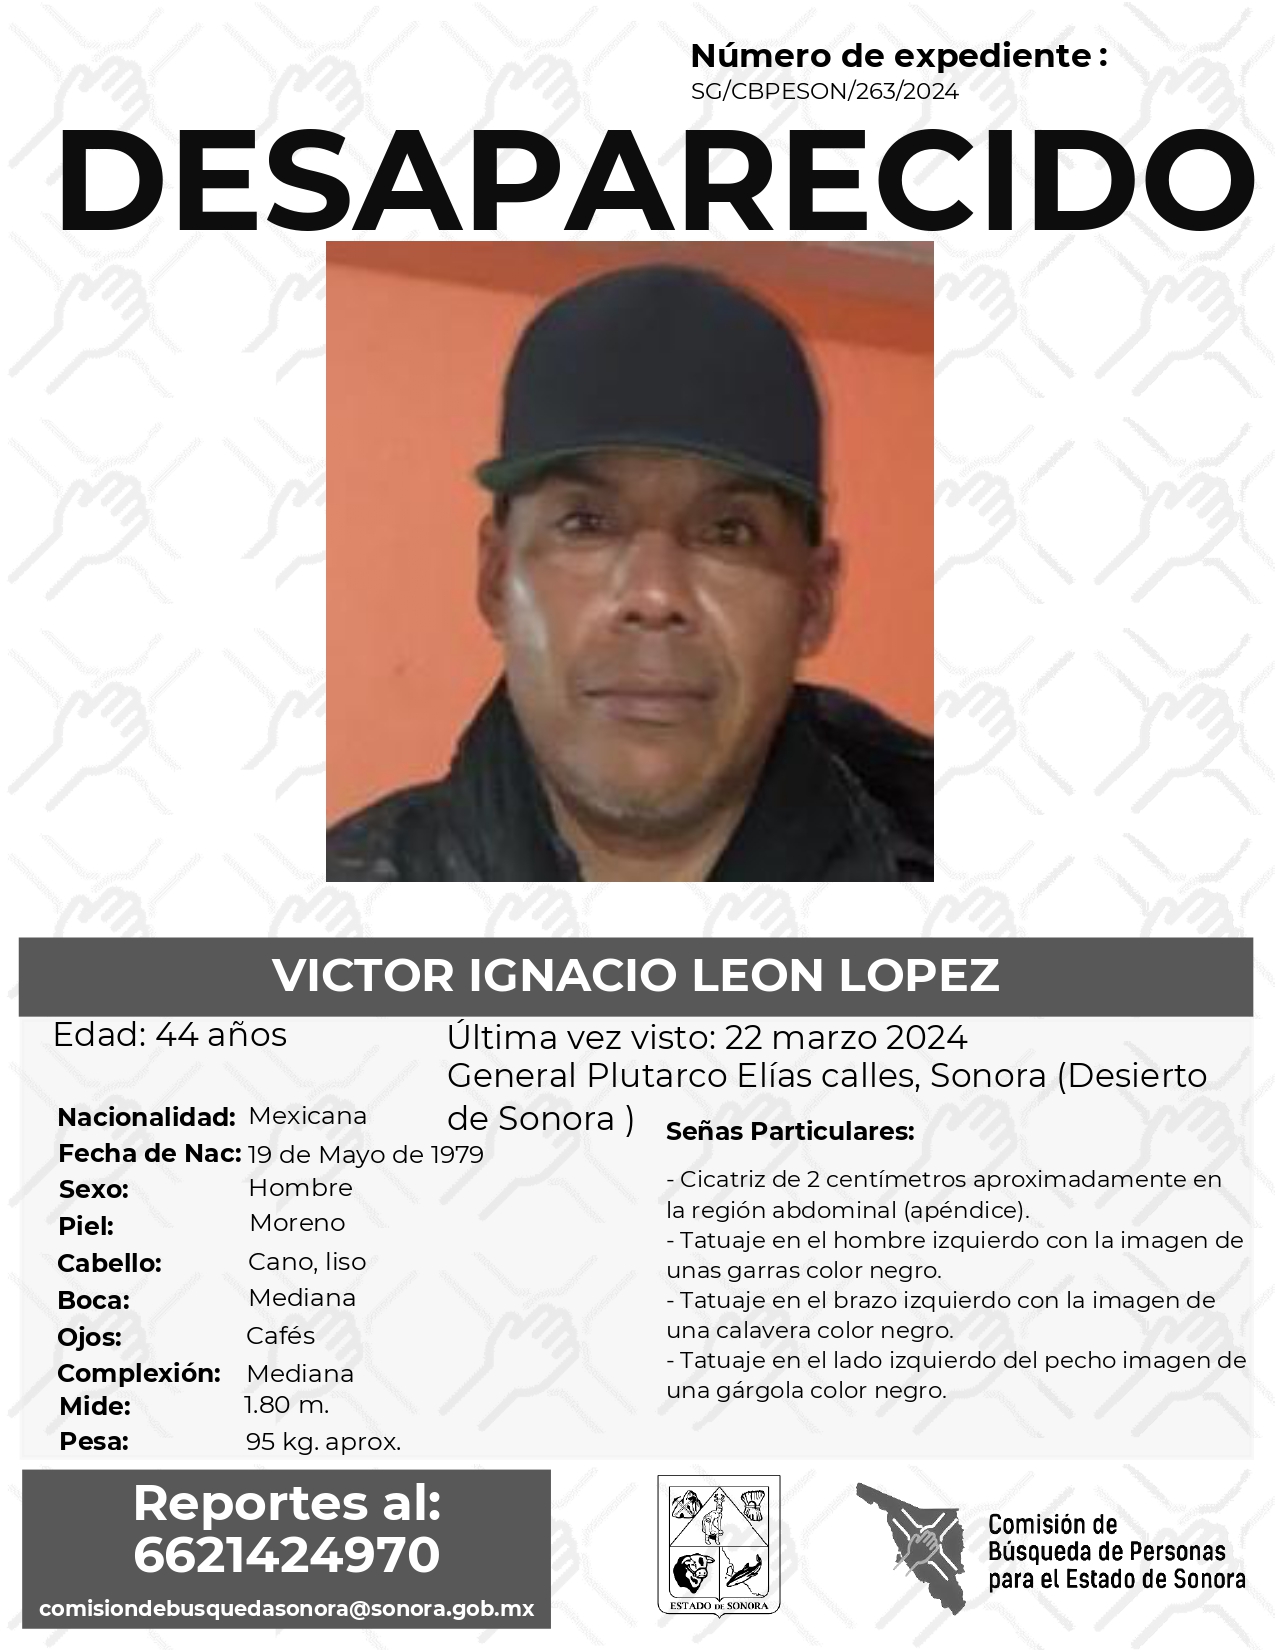 VICTOR IGNACIO LEON LOPEZ - DESAPARECIDO